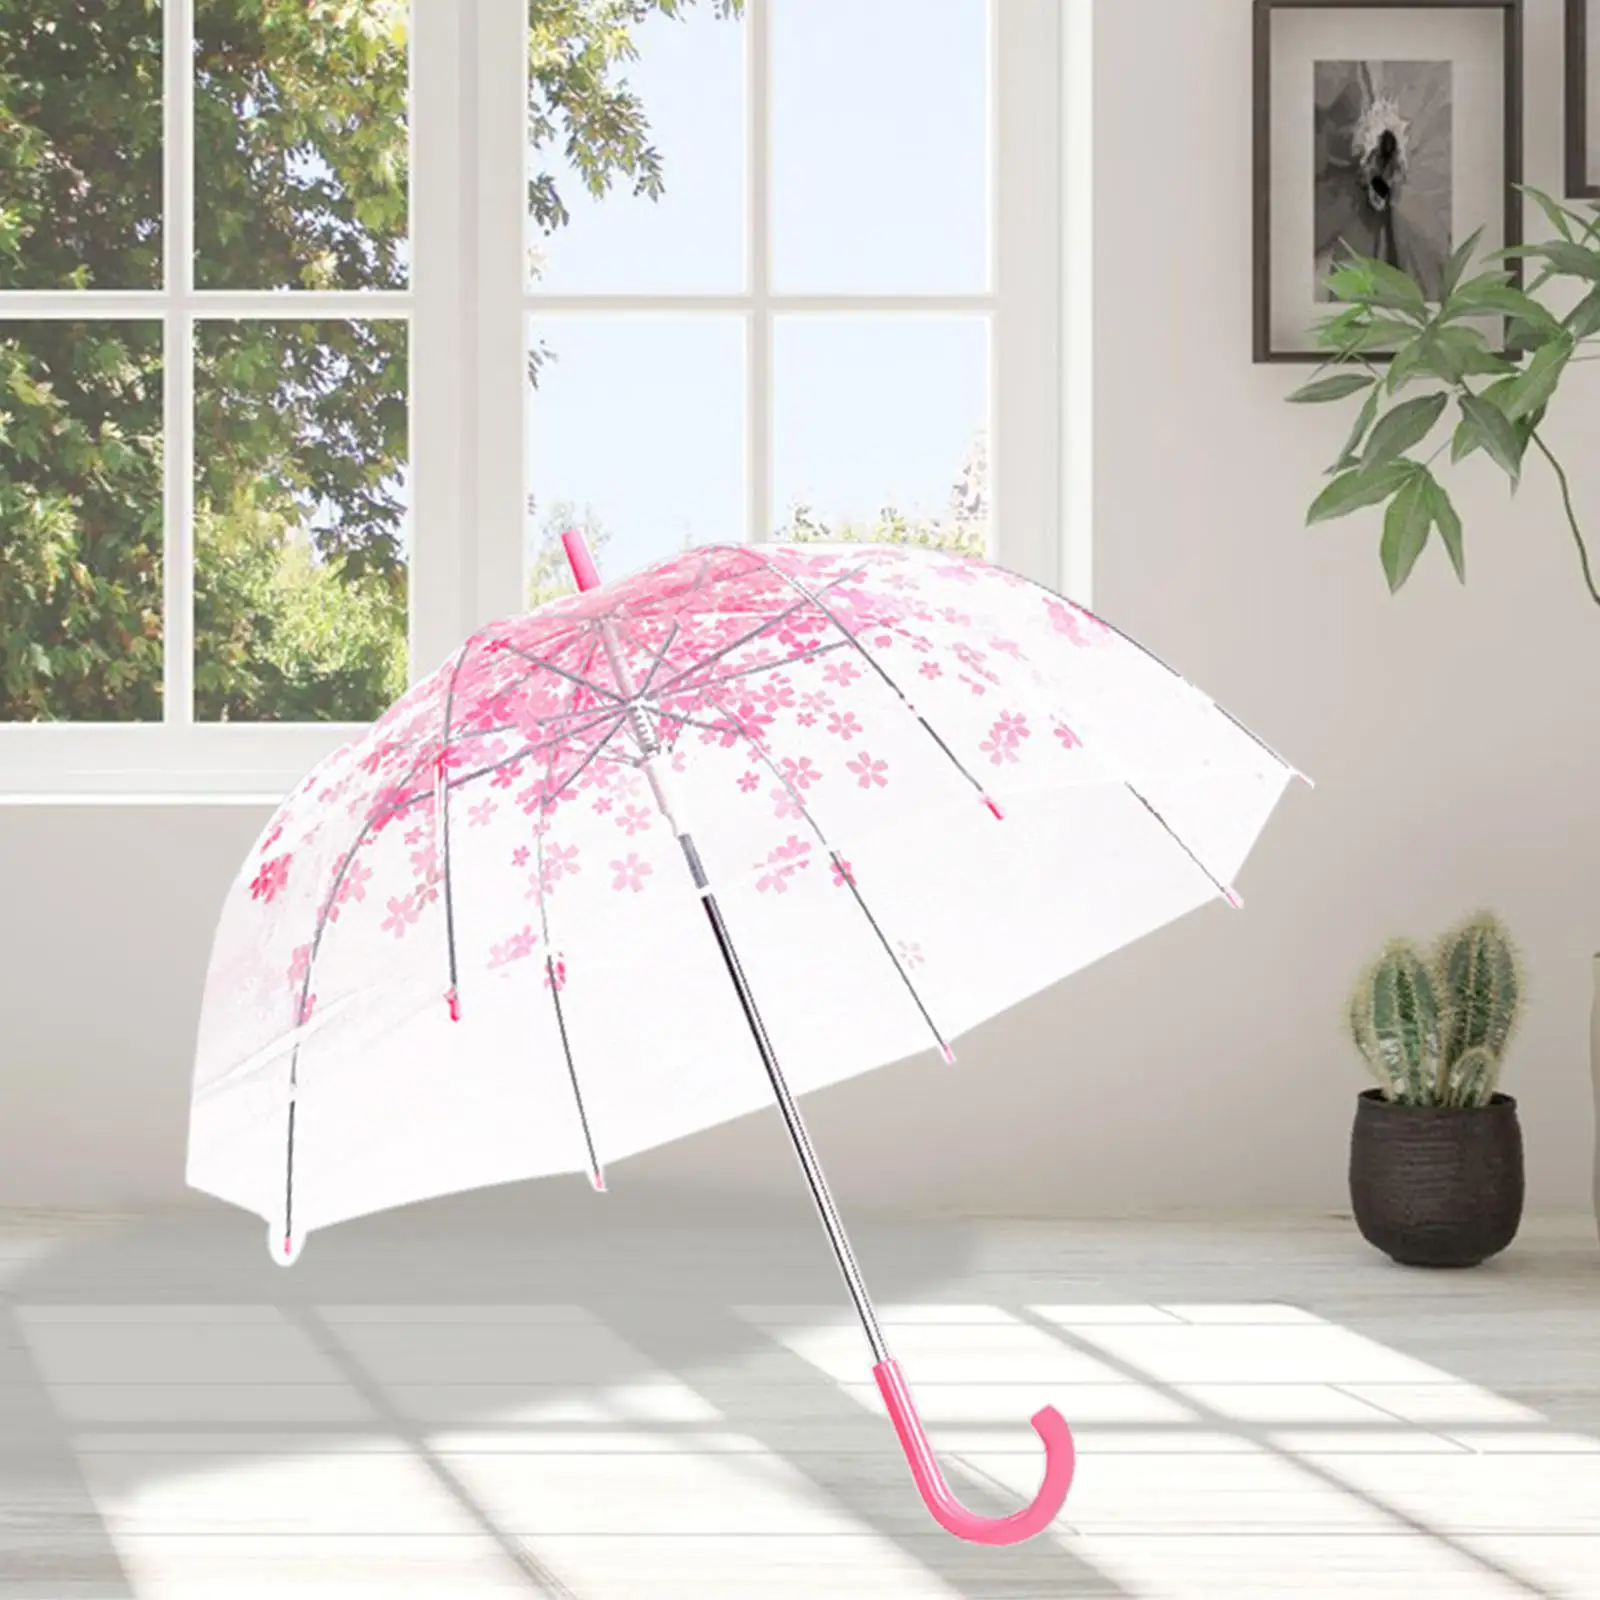 Transparent Umbrella Cherry Blossom Womens Windproof Stick Umbrella Clear Bubble Umbrella for Travel Weddings Picnics Beach